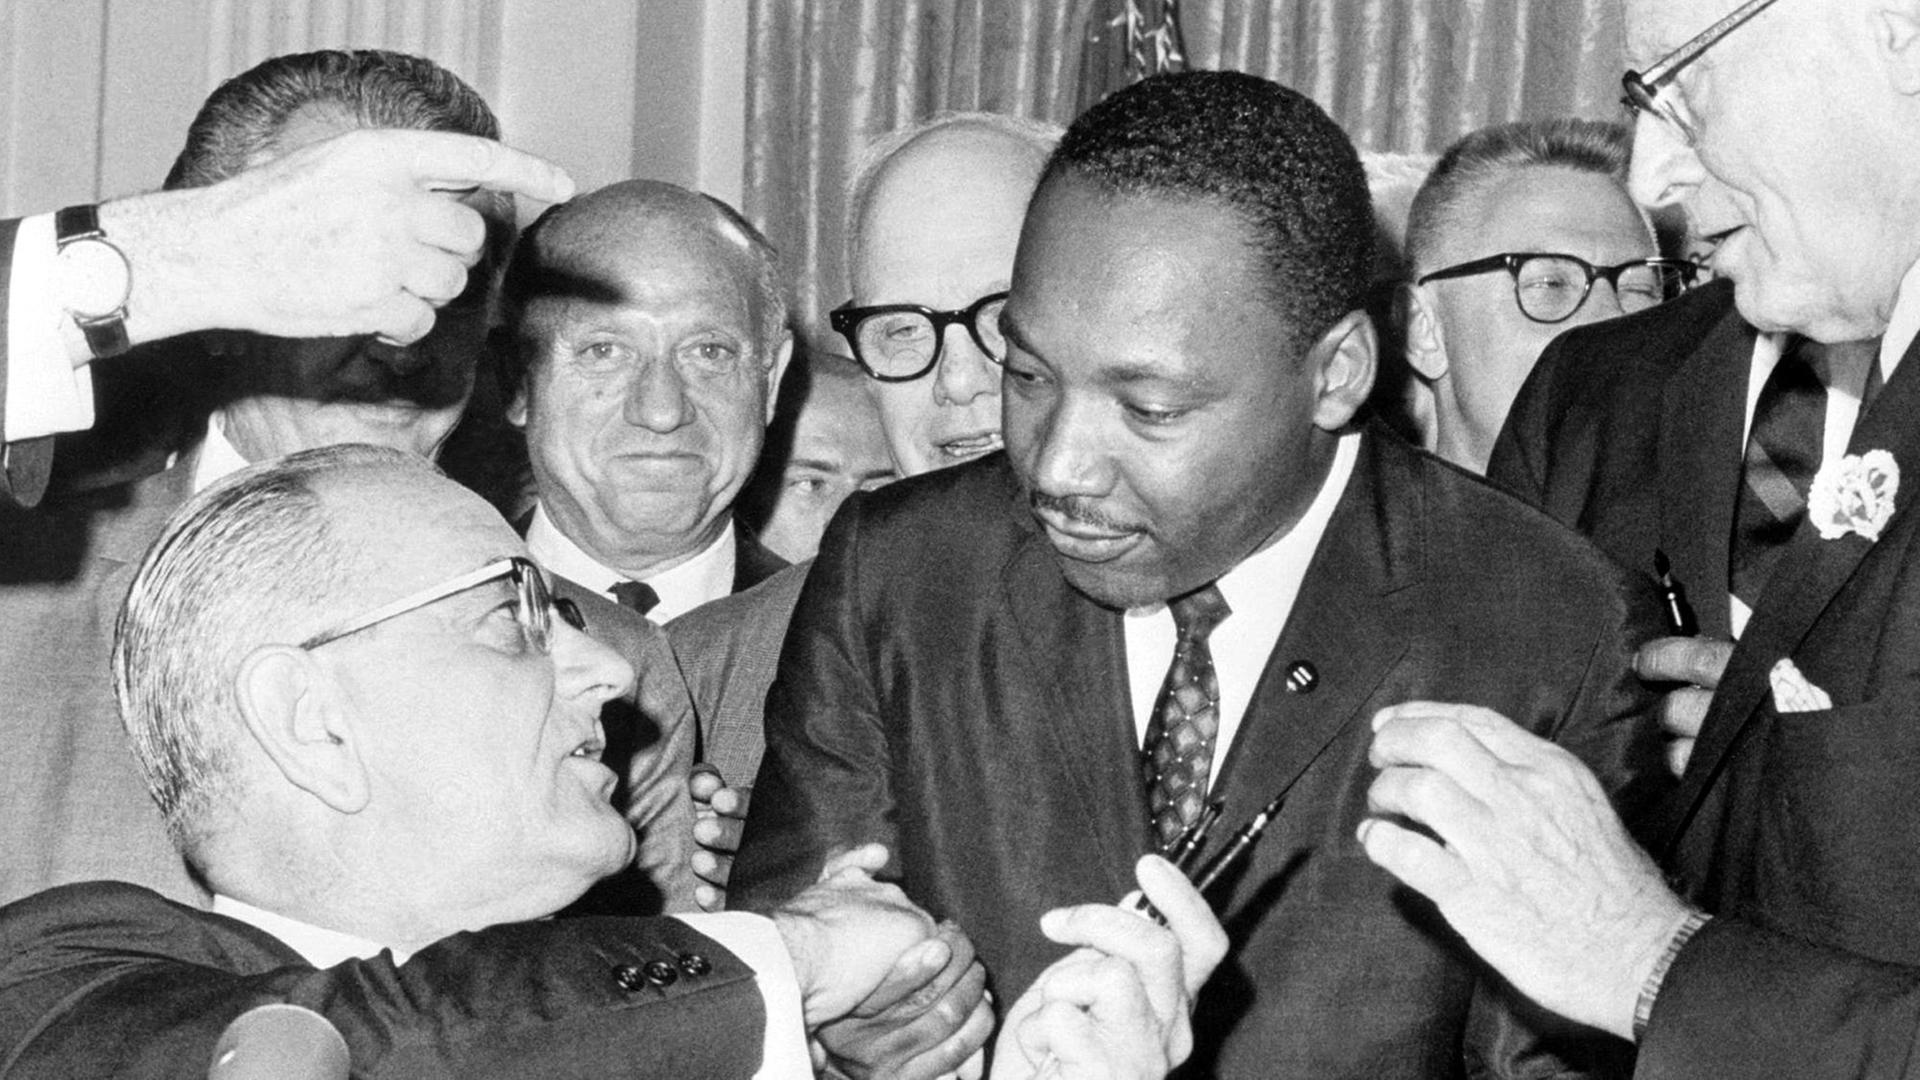 Nach der Unterzeichnung des Bürgerrechts-Gesetzes am 2.7.1964 in Washington DC. reicht US-Präsident Lyndon Baines Johnson (l) den Federhalter an den Bürgerrechtler Martin Luther King weiter und gibt ihm die Hand. Das Bürgerrechtsgesetz sollte eine Gleichberechtigung der farbigen Bevölkerung in den Vereinigten Staaten von Amerika garantieren und galt als eine der wichtigsten Gesetzes-Entscheidungen in der Geschichte der USA. King wurde am 4.4.1968 im Alter von 39 Jahren in Memphis von James Earl Ray erschossen.